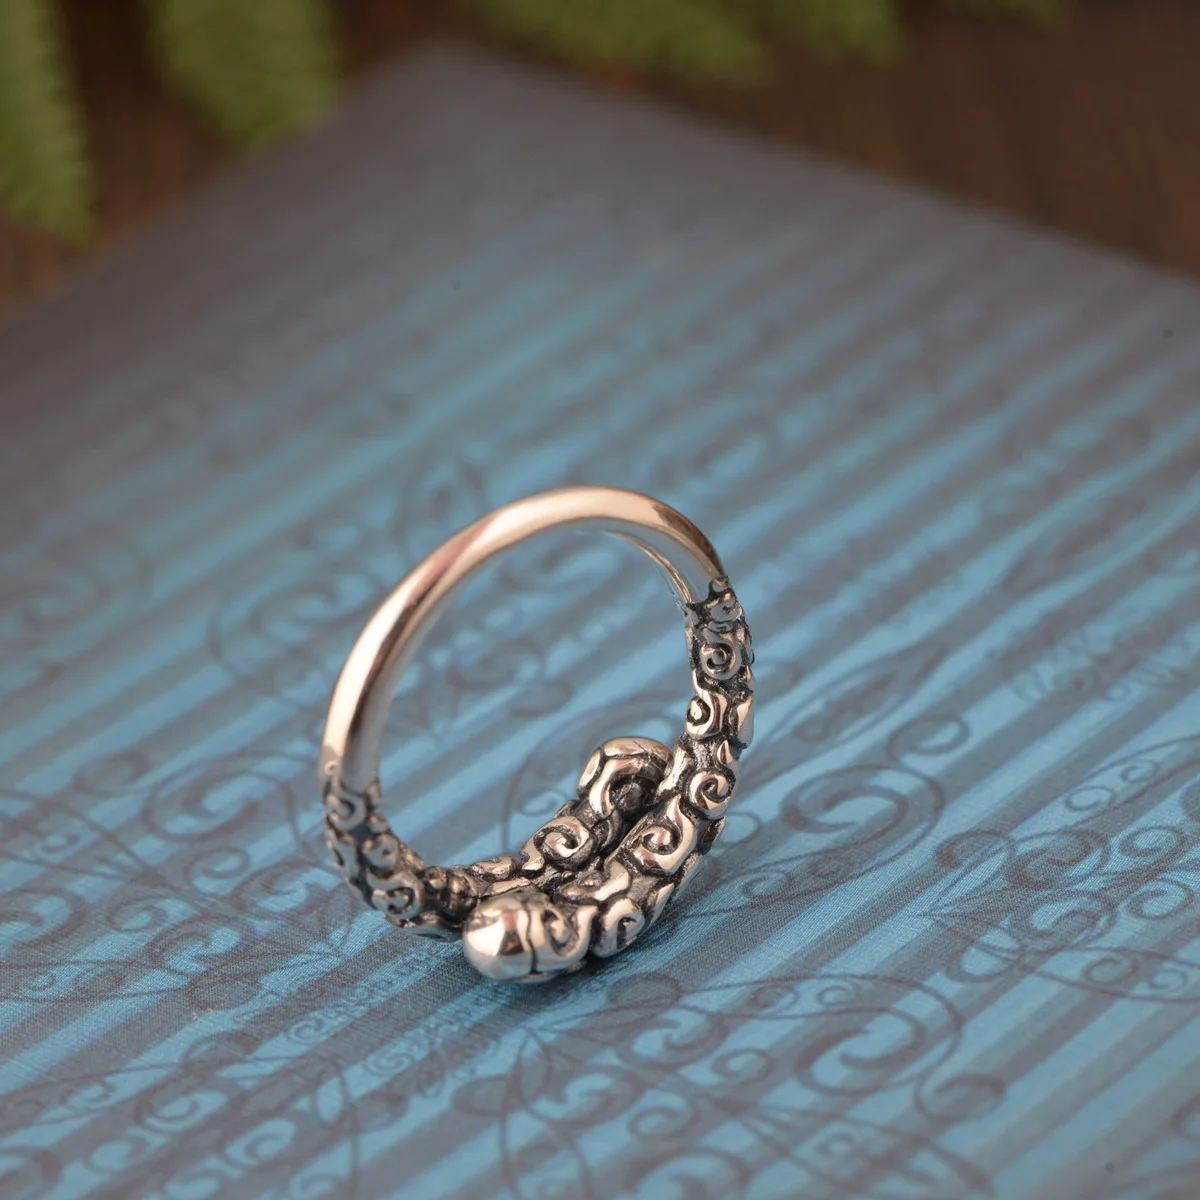 S990 тайский серебро восстановление древних способов процесс отличной форме кольца открытие женская модель